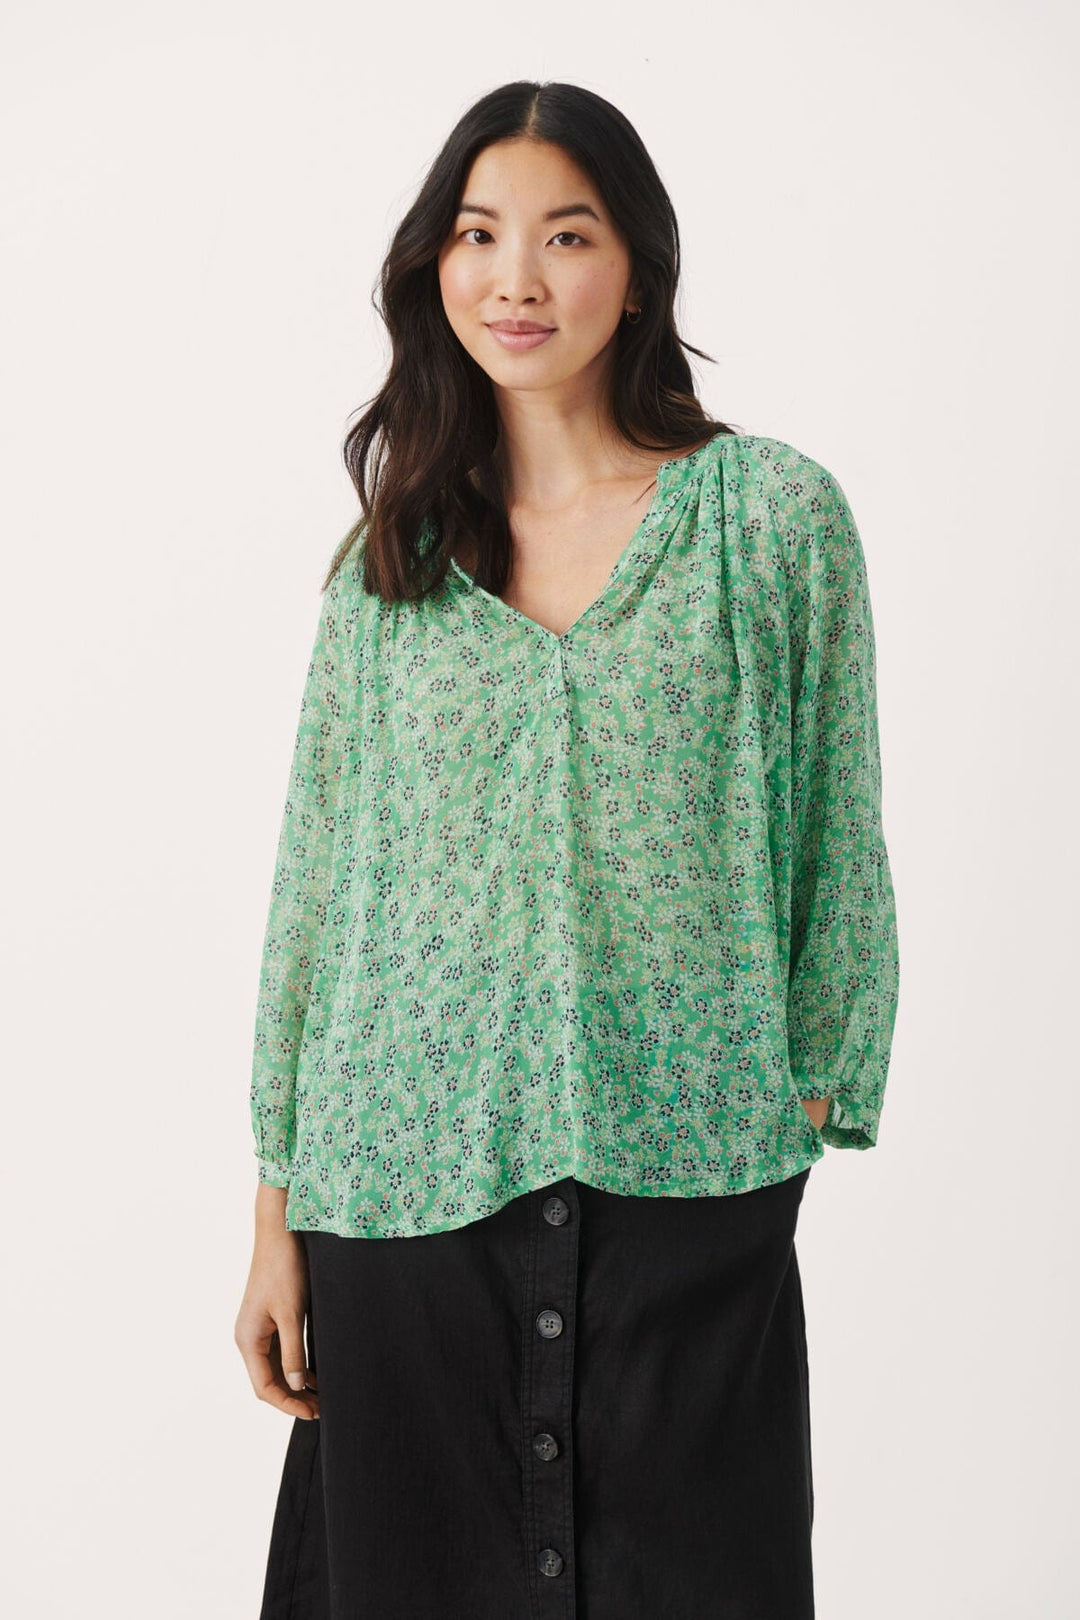 Greenbriar Mini Flower Erdonaepw Blouse | Skjorter og bluser | Smuk - Dameklær på nett